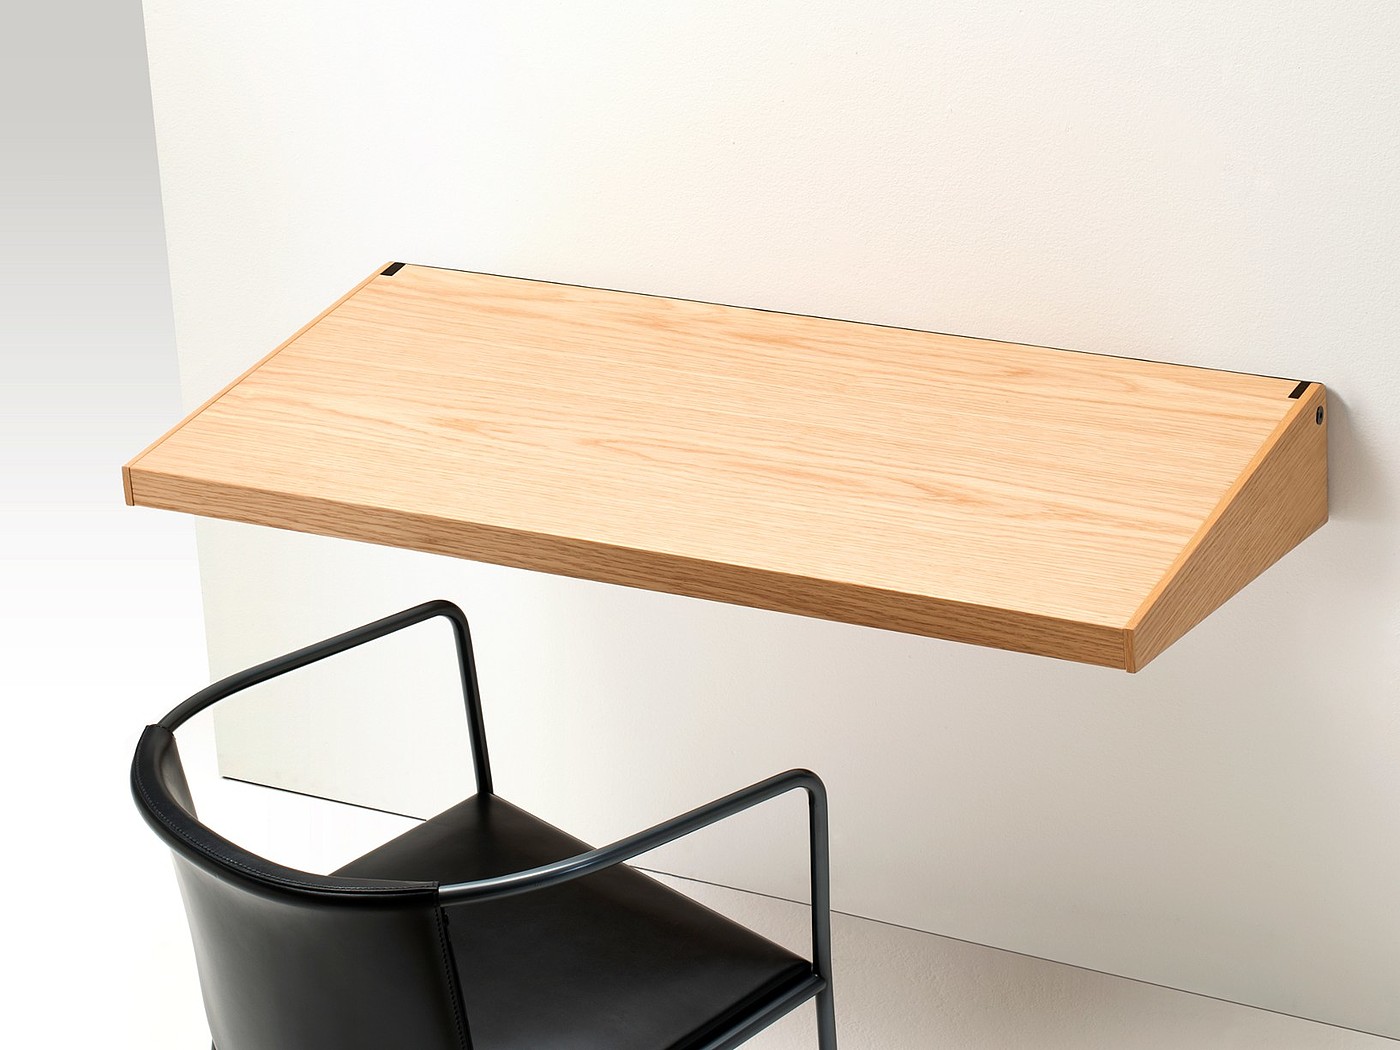 每个创作者都应该有张木桌:Timerecorder 时计 | VLOG18 - 罗磊的独立博客